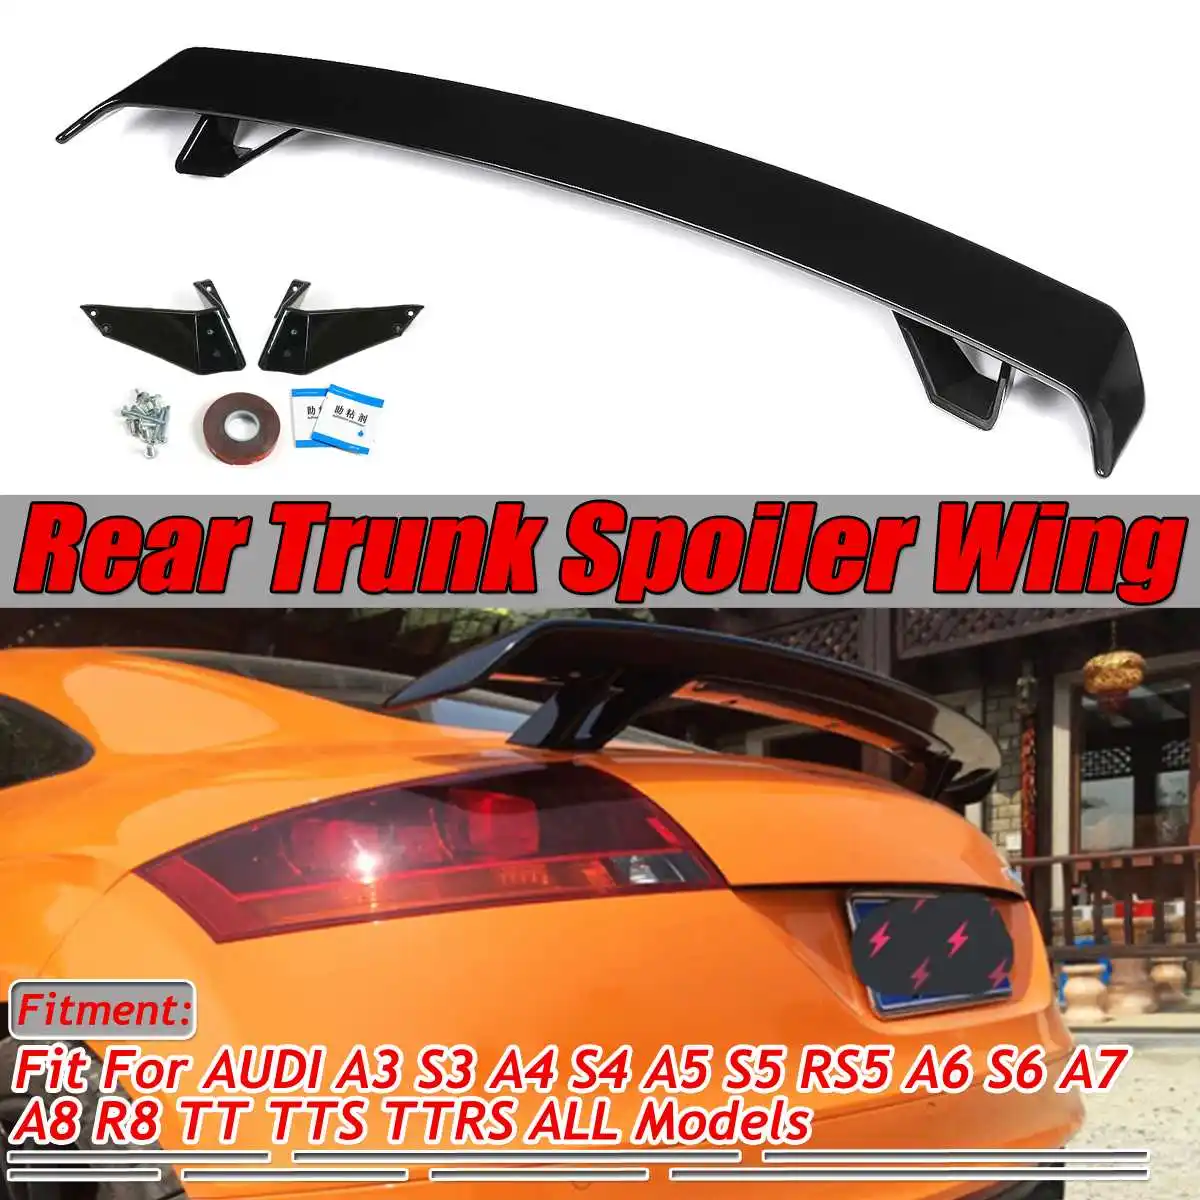 

Carbon Fiber Look/Black Car Rear Trunk Boot Lip Spoiler Wing Lid Extension For Audi A3 S3 A4 S4 A5 S5 RS5 A6 S6 A7 A8 R8 TT TTS